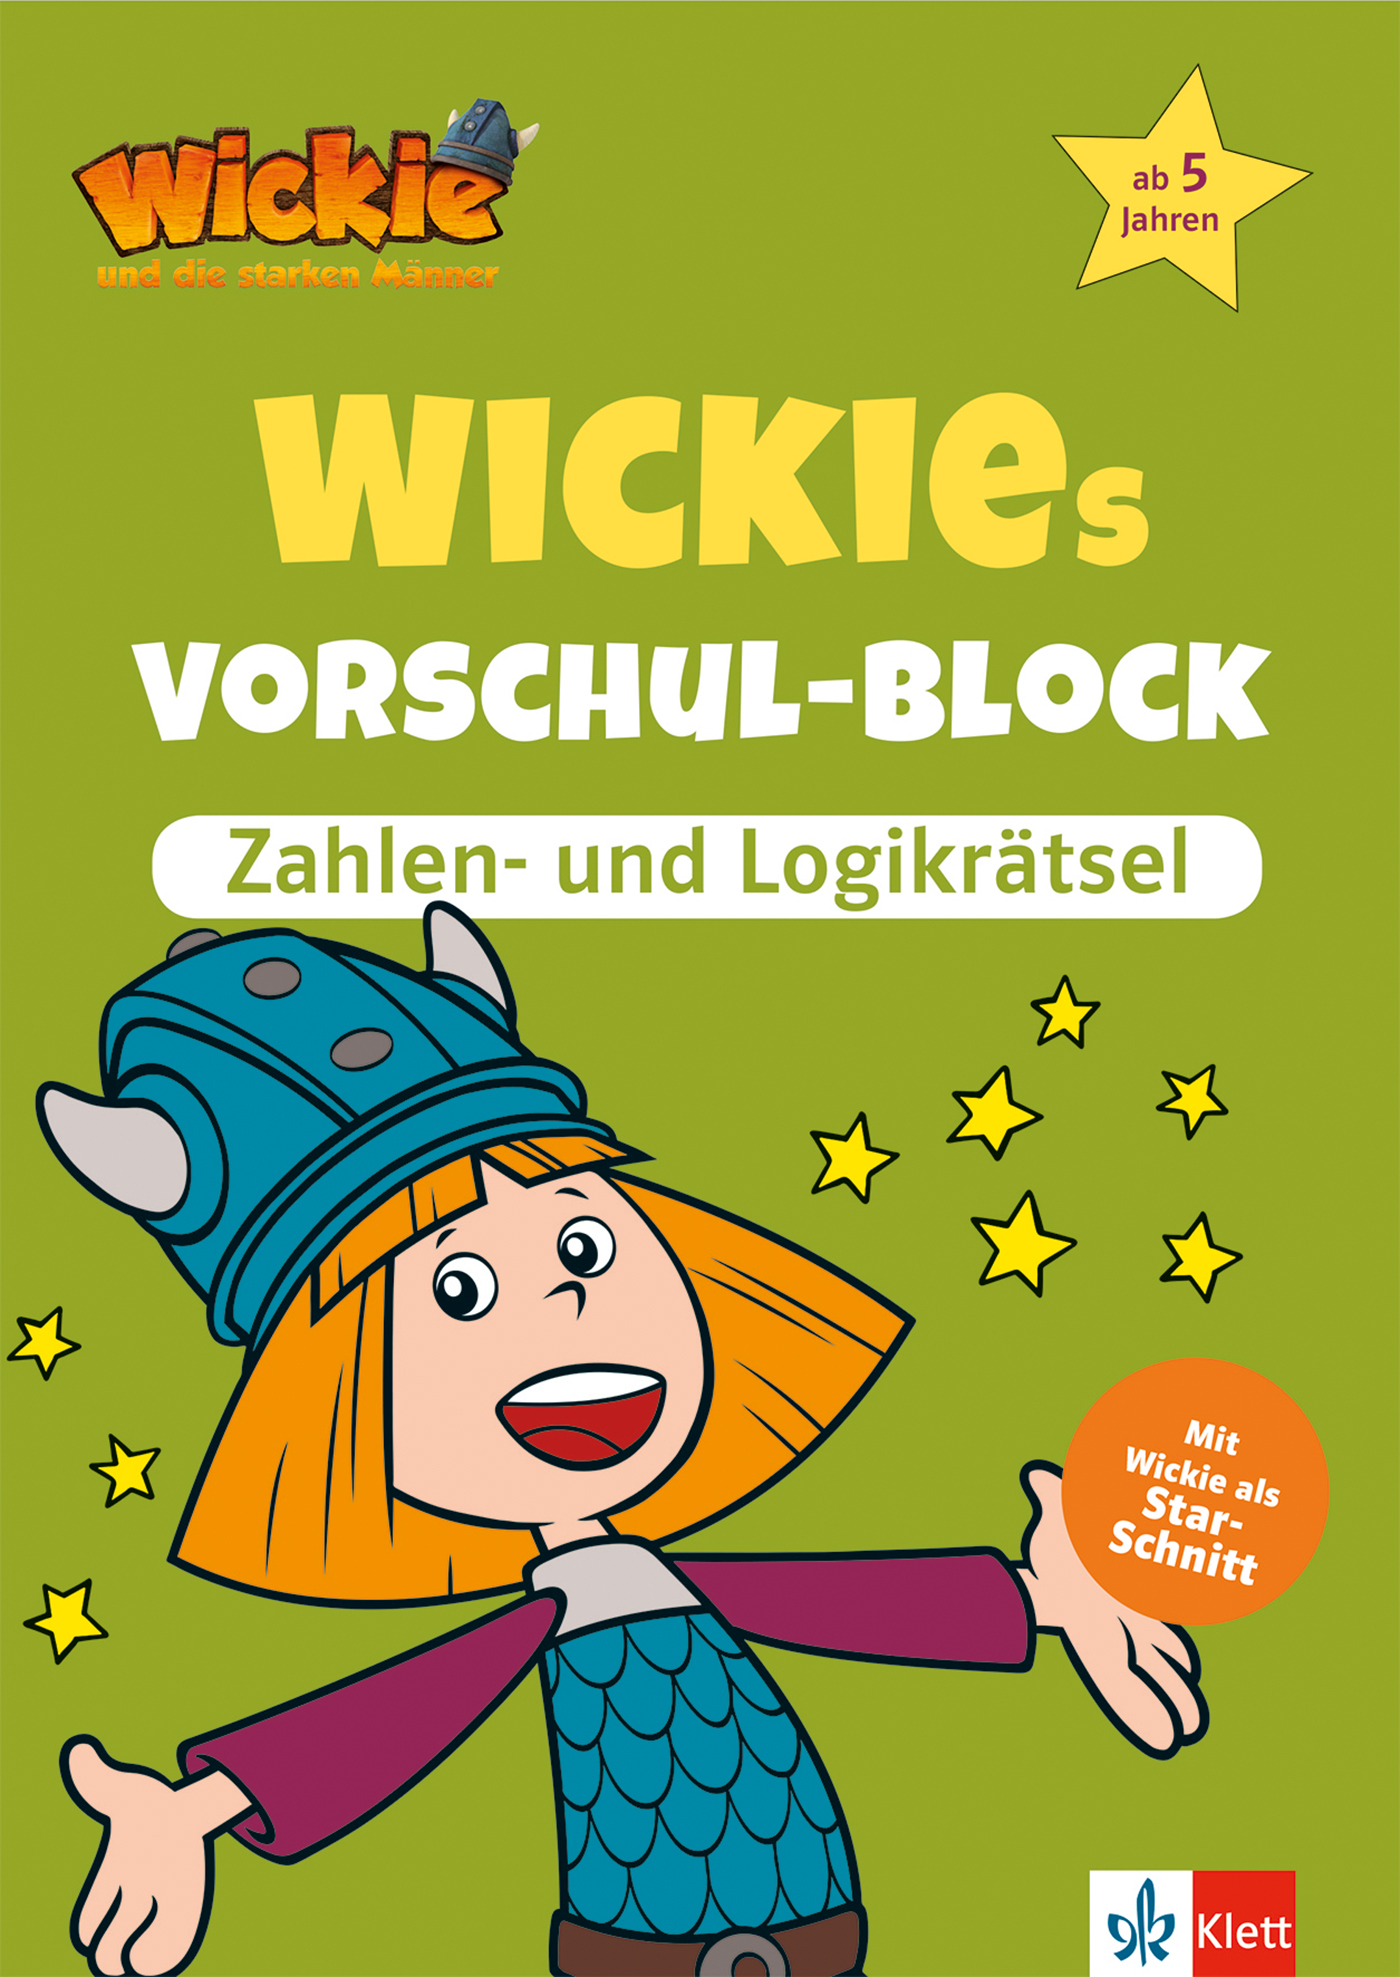 Wickie und die starken Männer: Wickies Vorschul-Block Zahlen- und Logikrätsel